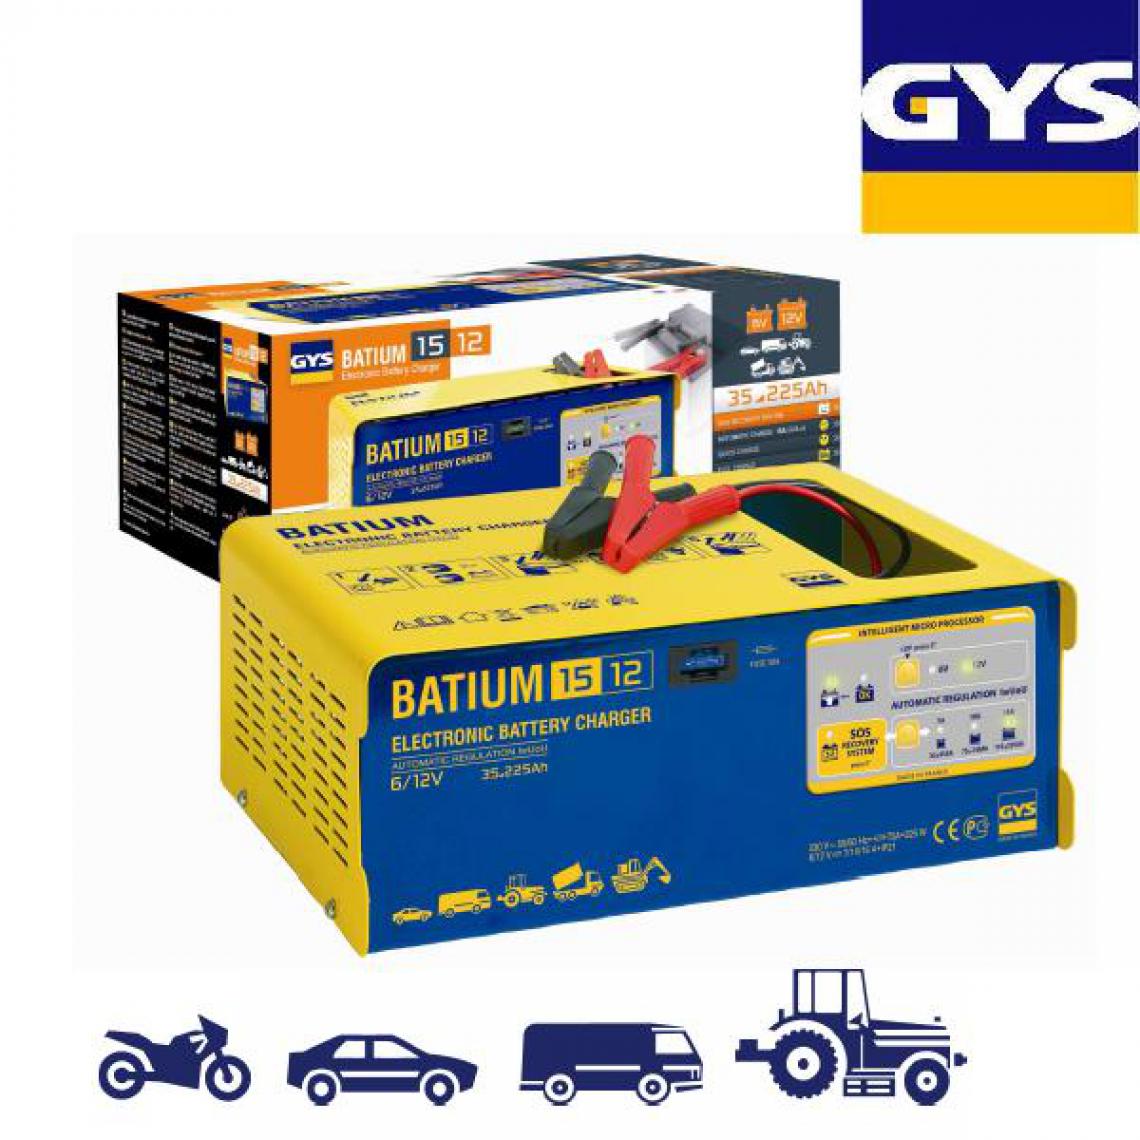 Gys - Gys - Chargeur batterie automatique 35 à 225ah - Batium 15.12 - Consommables pour outillage motorisé